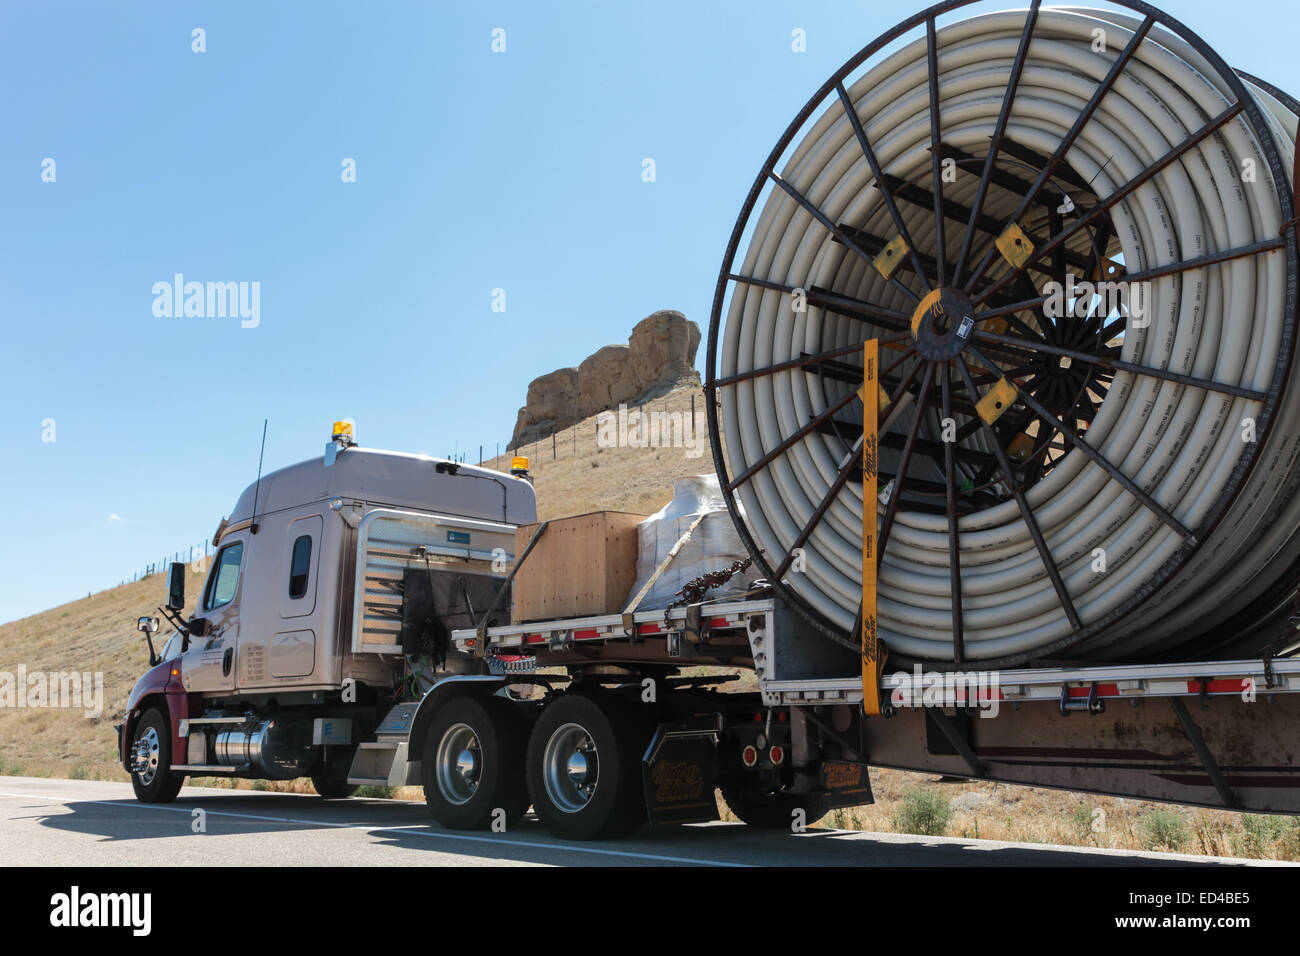 Eine amerikanische Semi Truck schleppen Rollen von HDPE-Kunststoff Rohr auf einem Tieflader für die Ölindustrie und fracking Standorten in den USA Stockfoto